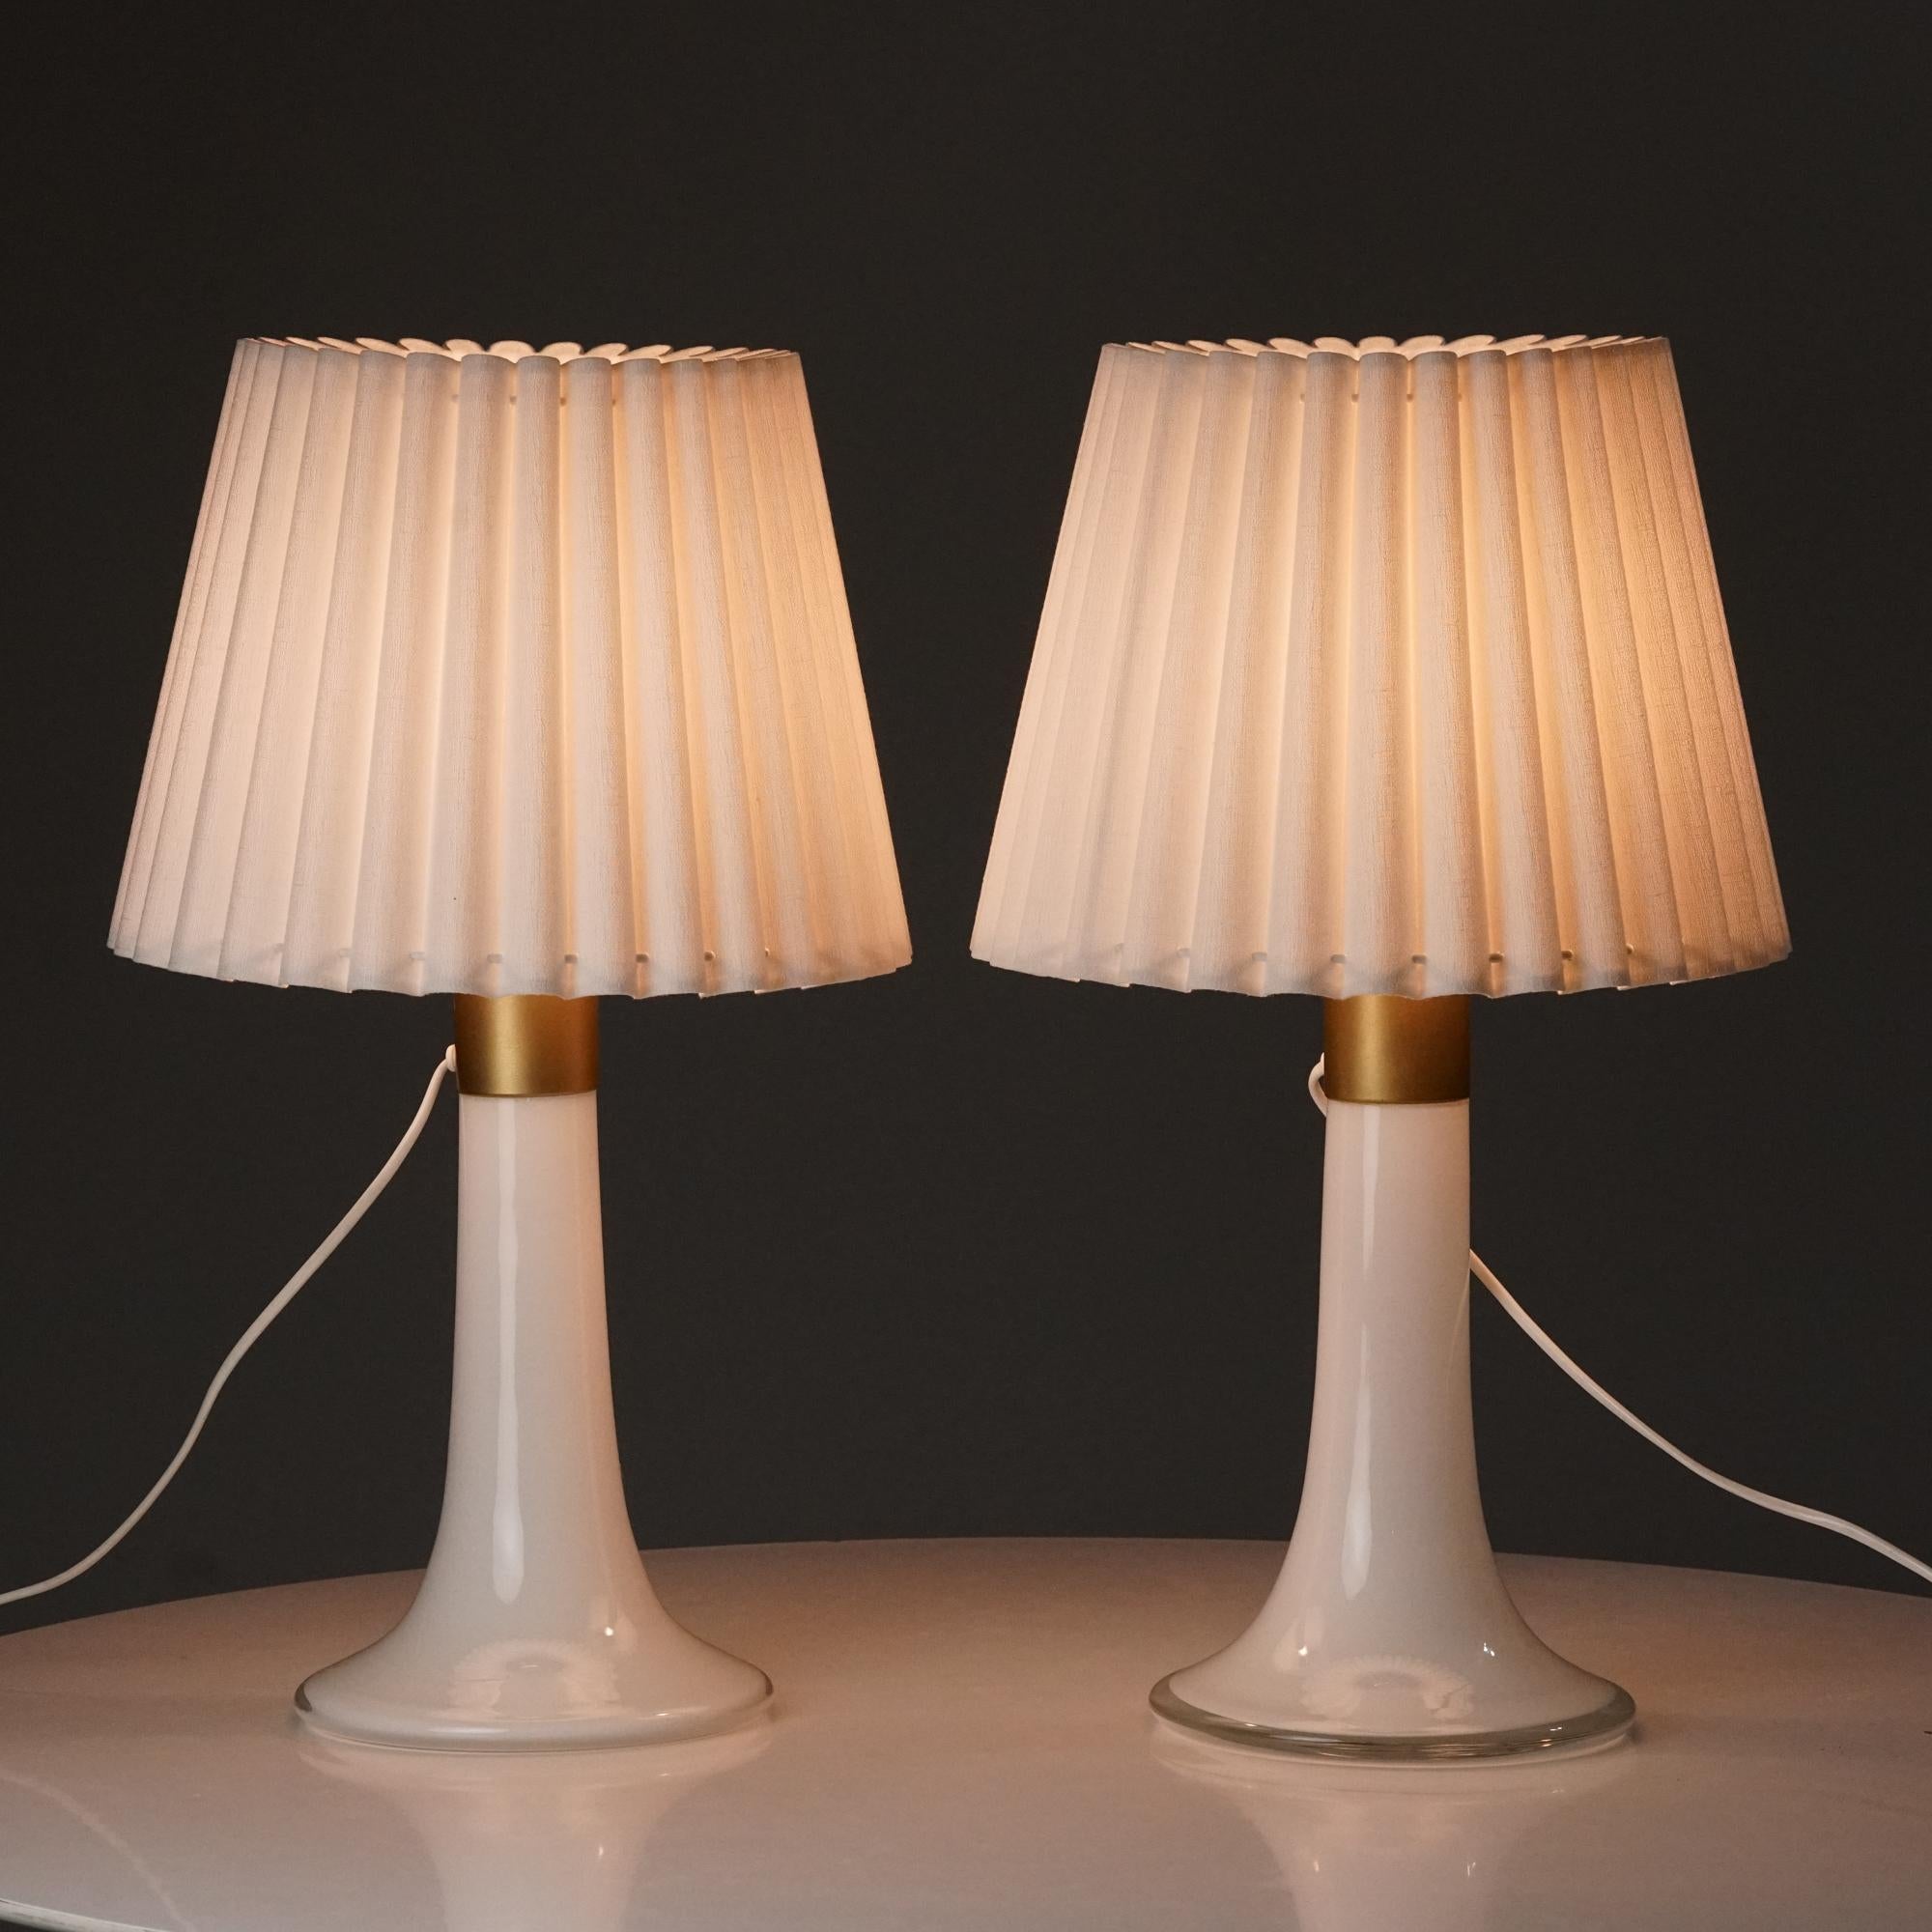 Satz von zwei Tischlampen, entworfen von Lisa Johansson-Pape, hergestellt von Orno Oy, 1960er Jahre. Glas und lackiertes Metall mit Lampenschirmen aus Baumwolle. Guter Vintage-Zustand, leichte Patina im Einklang mit Alter und Gebrauch. Die Lampen